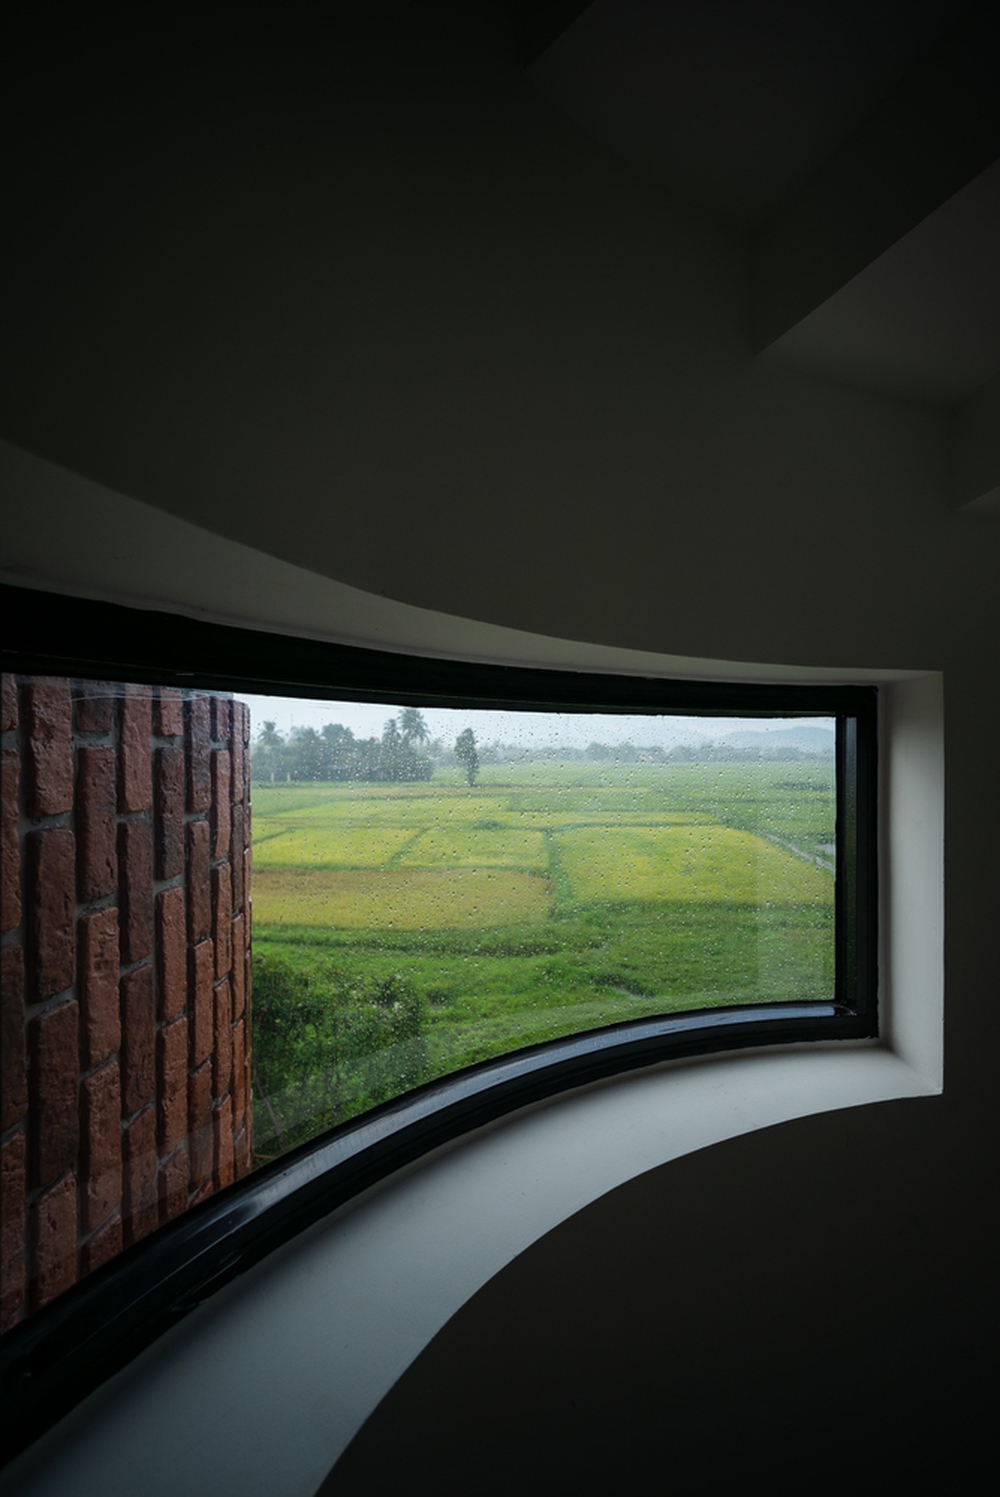 Ngôi nhà chống lũ, mở rộng tầm nhìn nhờ bố trí cửa sổ đa dạng - ảnh 6